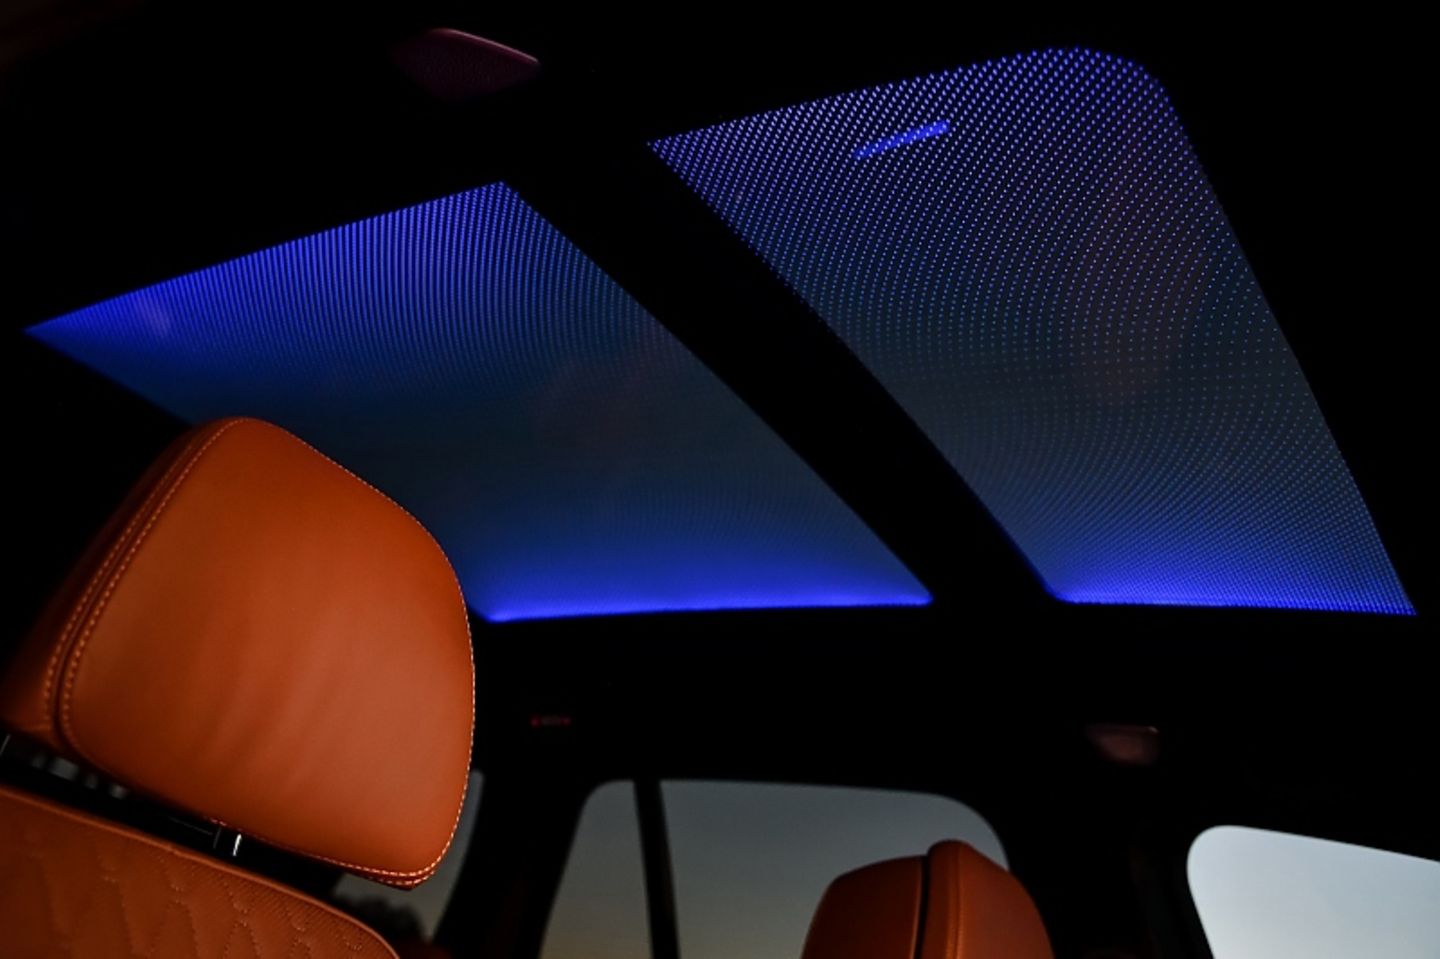 Neuer BMW X5 – gewaltiger Auftritt trifft verspielten Innenraum